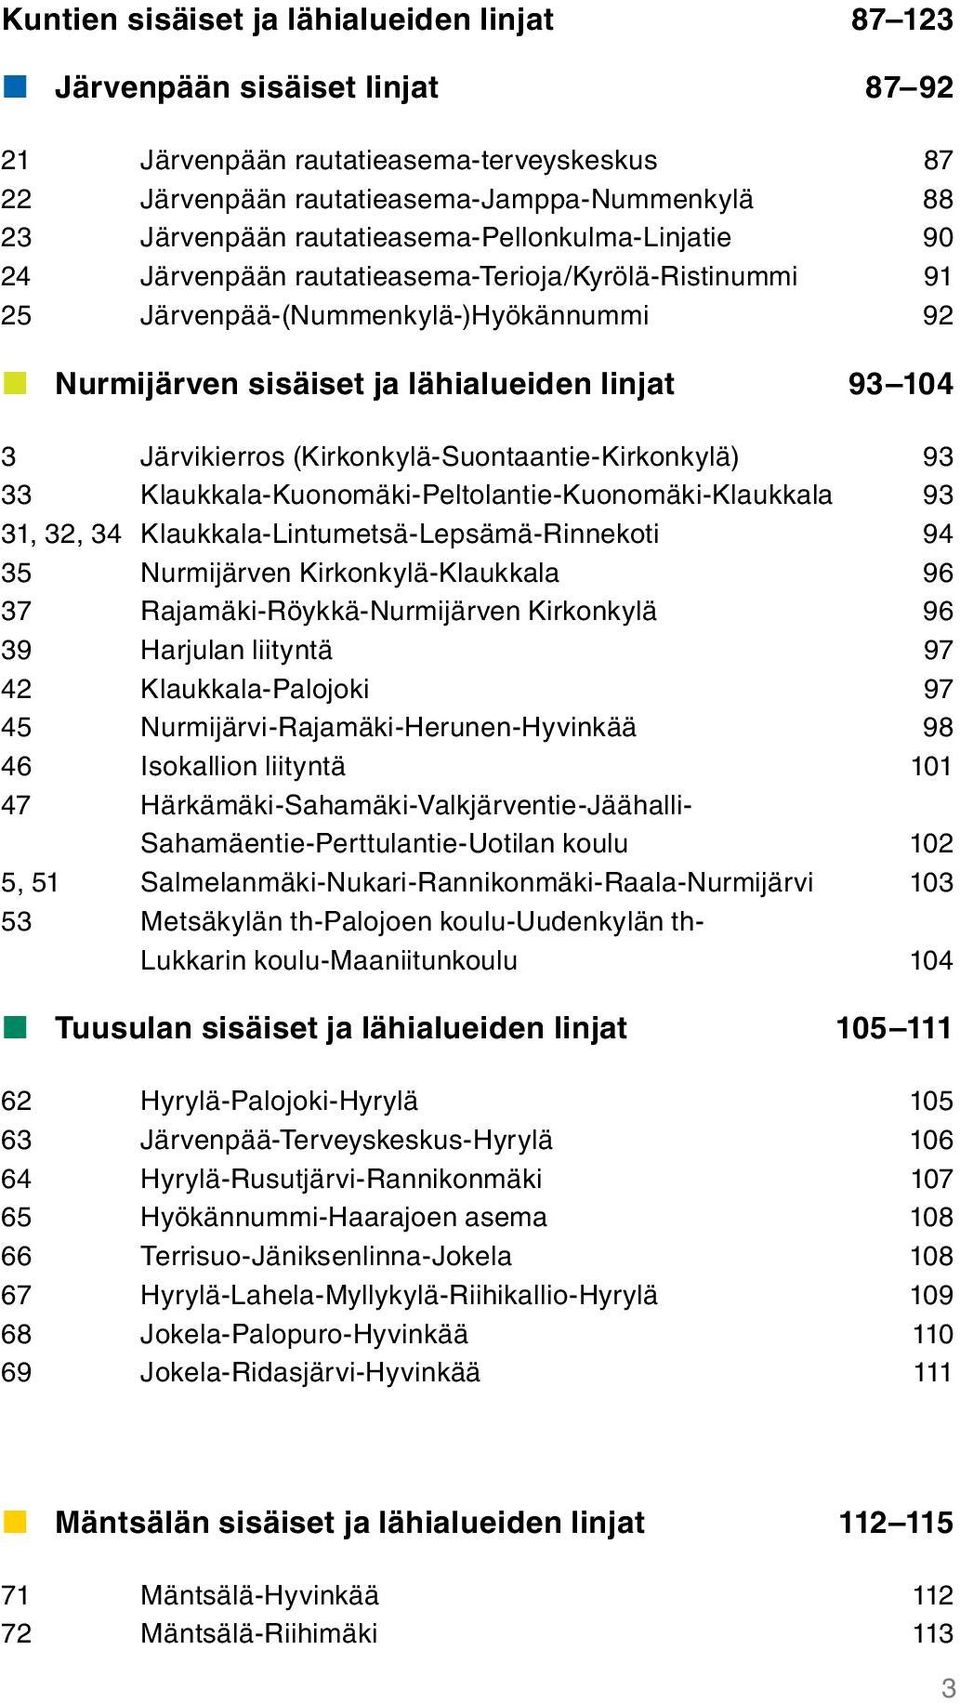 Järvikierros (Kirkonkylä-Suontaantie-Kirkonkylä) 93 33 Klaukkala-Kuonomäki-Peltolantie-Kuonomäki-Klaukkala 93 31, 32, 34 Klaukkala-Lintumetsä-Lepsämä-Rinnekoti 94 35 Nurmijärven Kirkonkylä-Klaukkala